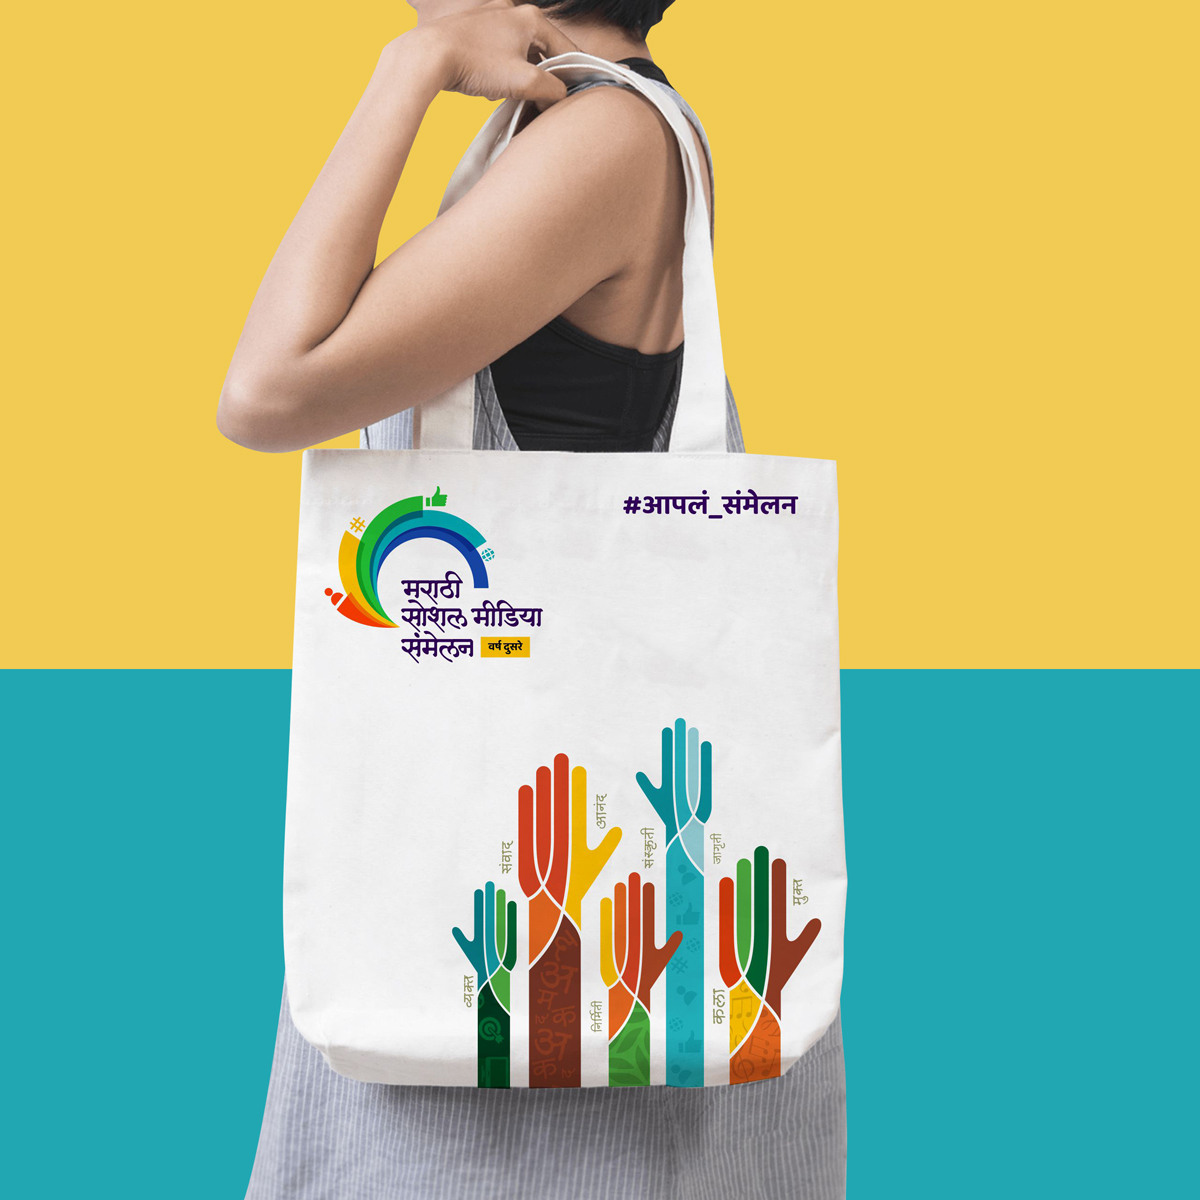 Marathi Social Media Sammelan Bag design